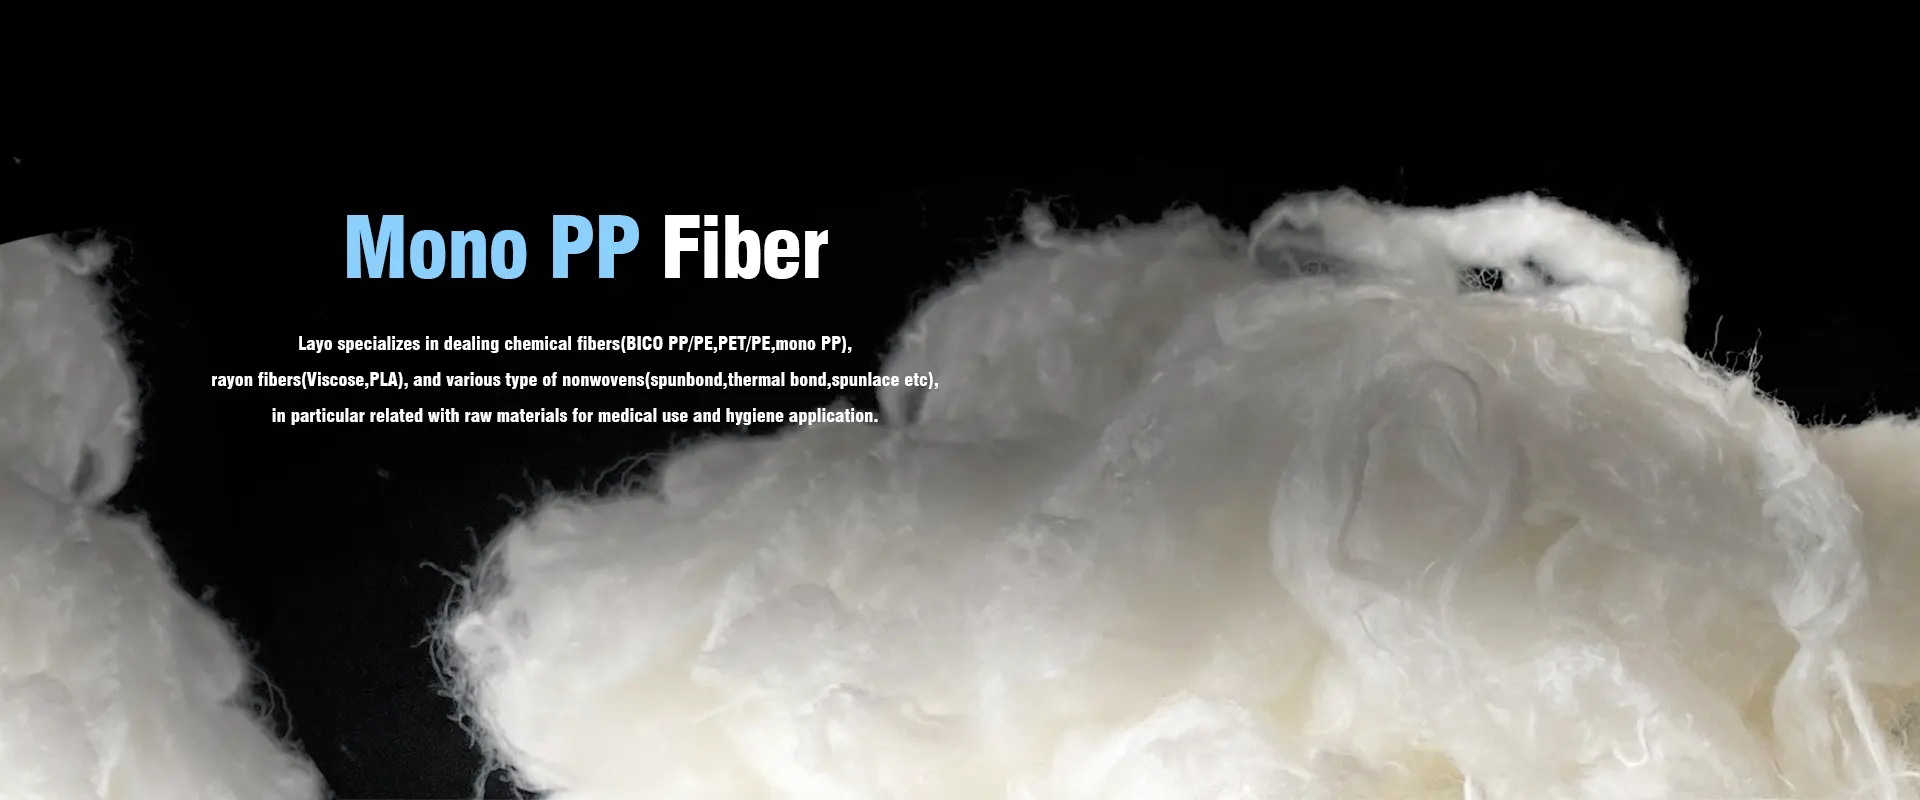 Mono PP Fiber leverantörer och tillverkar